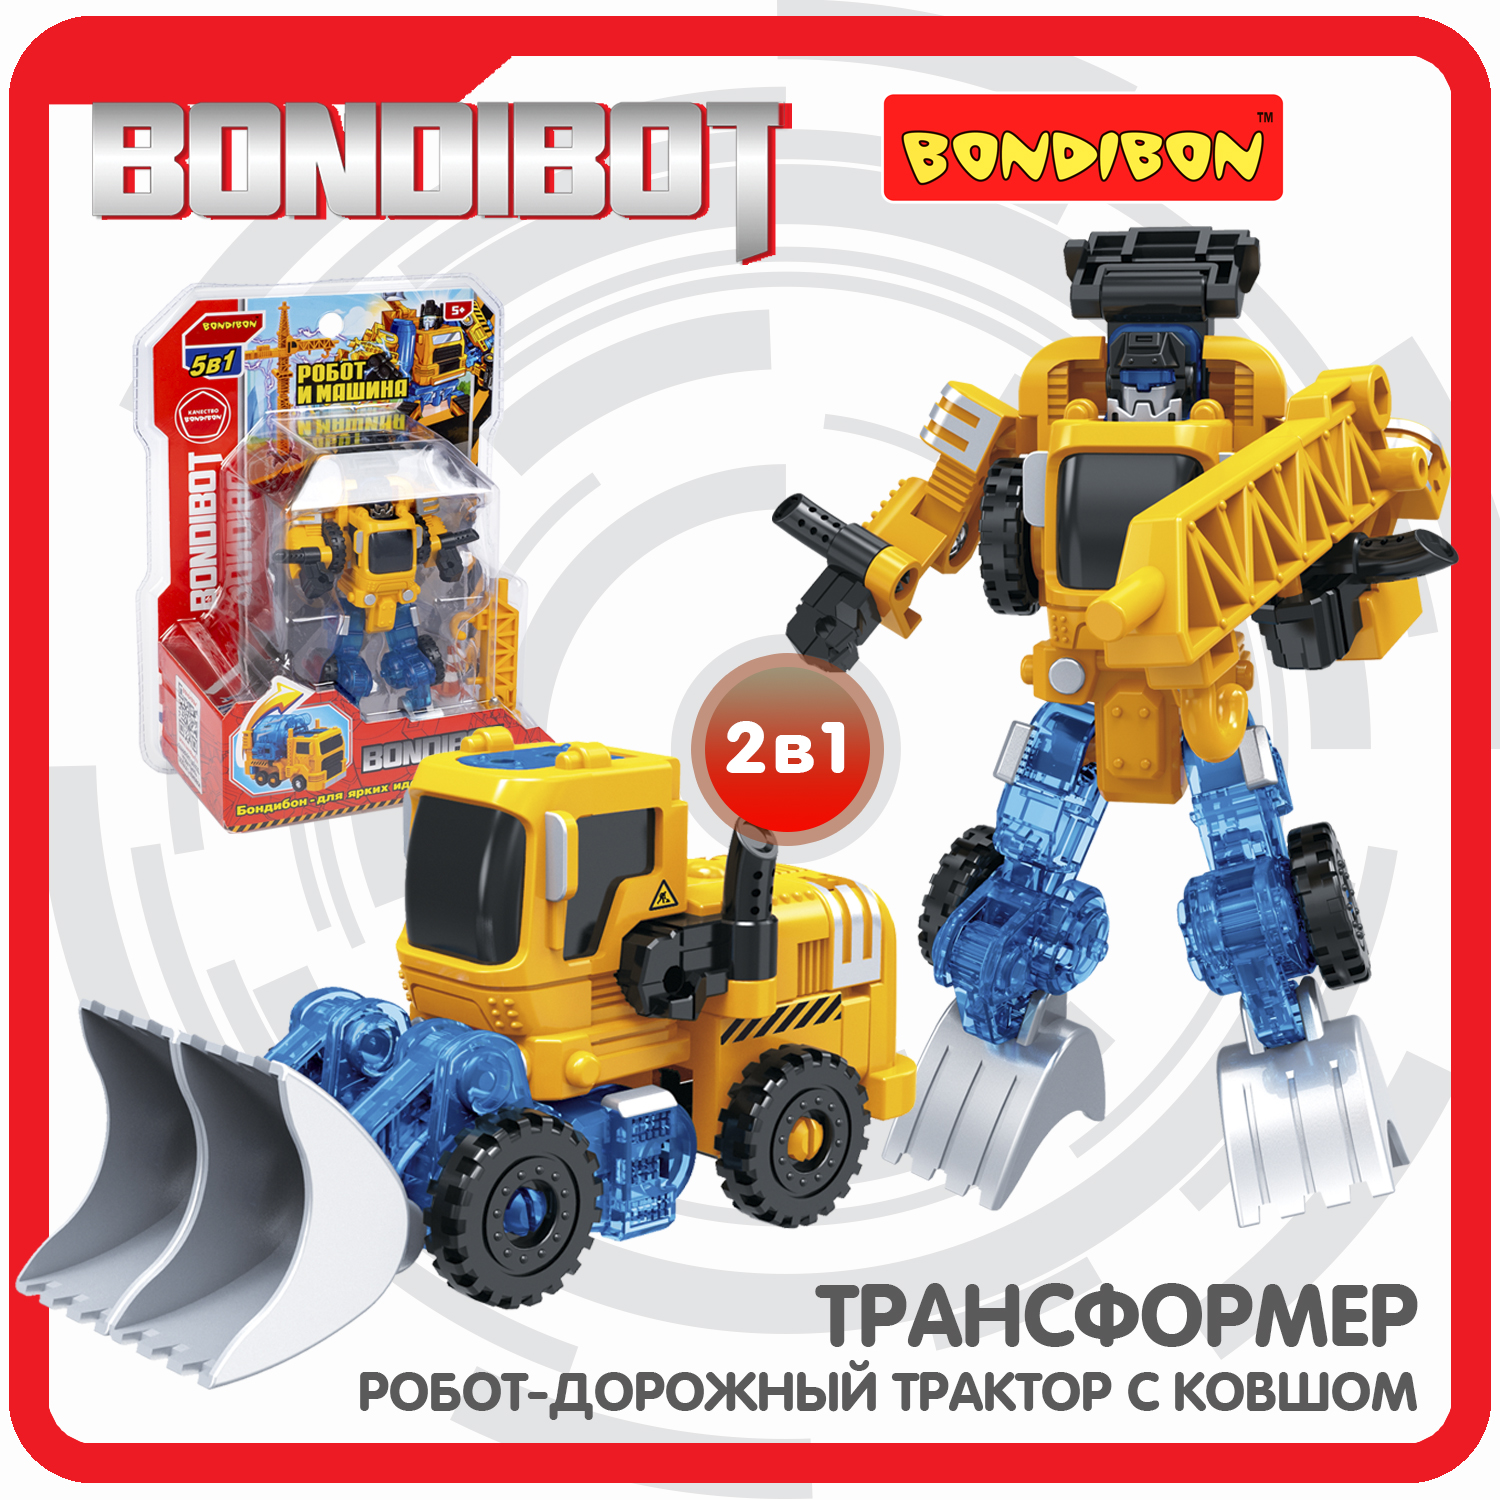 Трансформер 2в1 BONDIBOT Bondibon робот-строит.техника дорож.трактор с ковшом CRD20x15x8см bondibon трансформер bondibot 2 в 1 робот трактор с ковшом